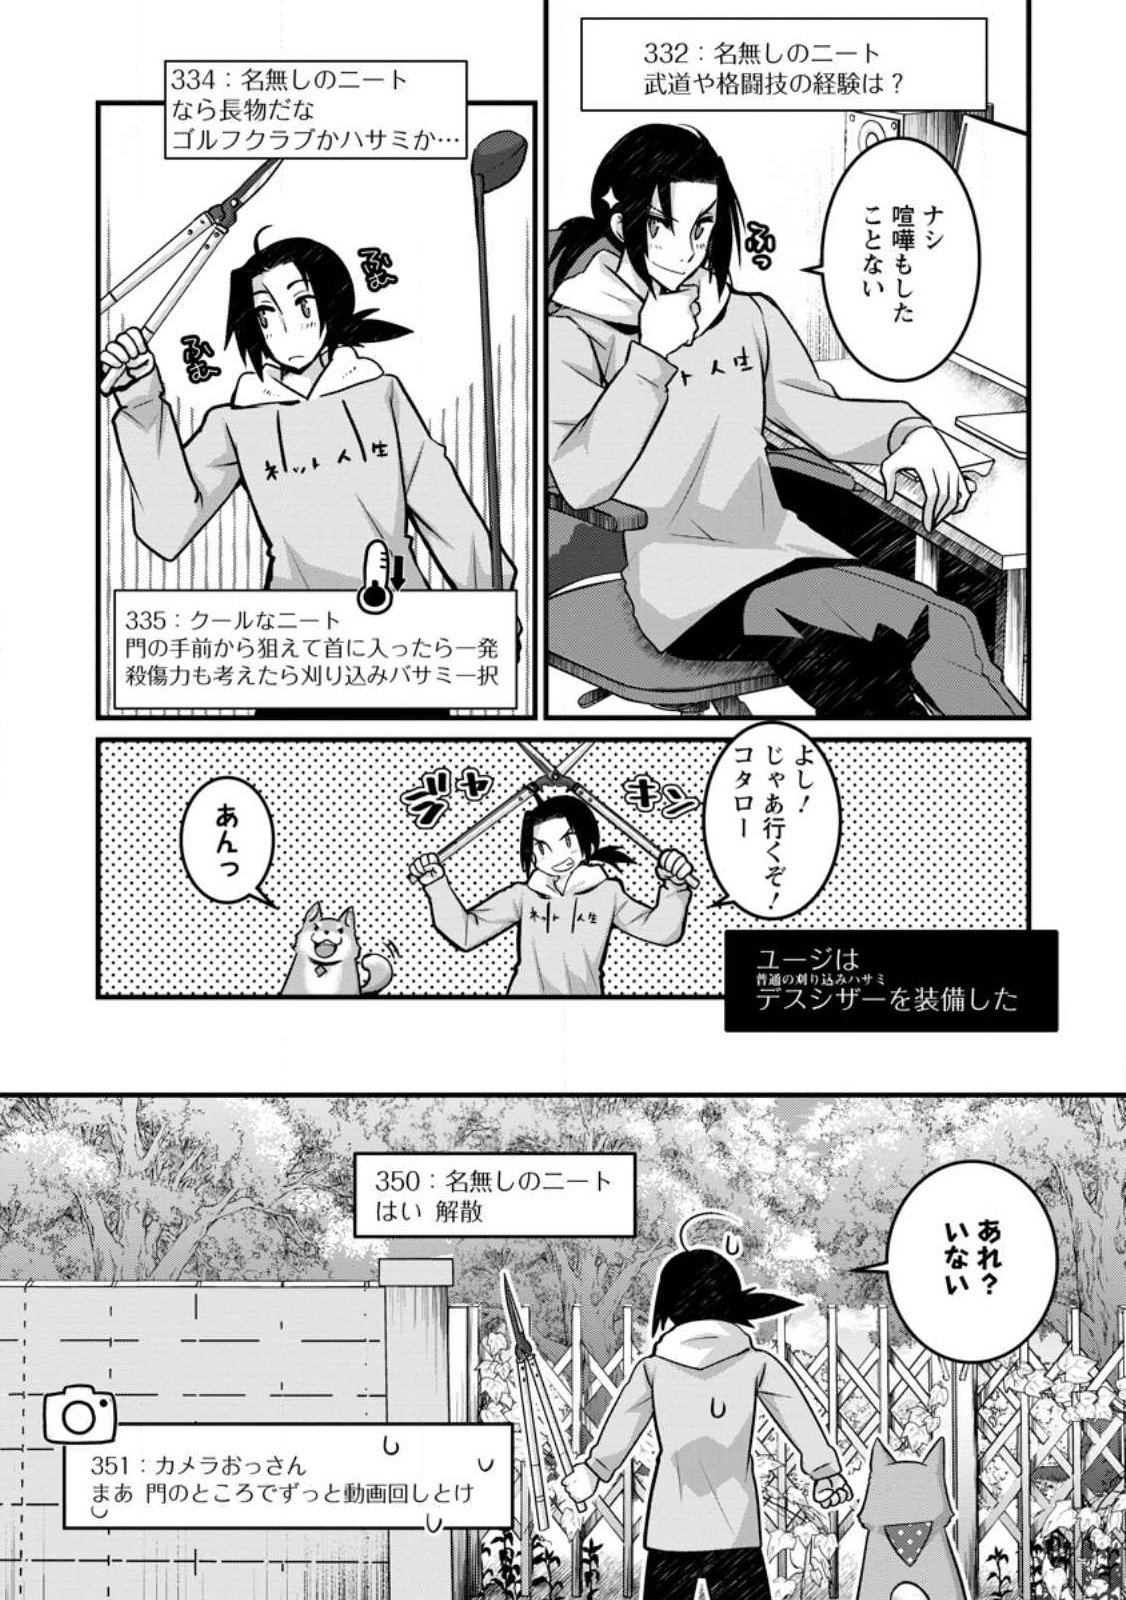 10-nen Goshi no HikiNEET wo Yamete Gaishutsu shitara Jitakugo to Isekai ni Tenishiteta - Chapter 1.3 - Page 10